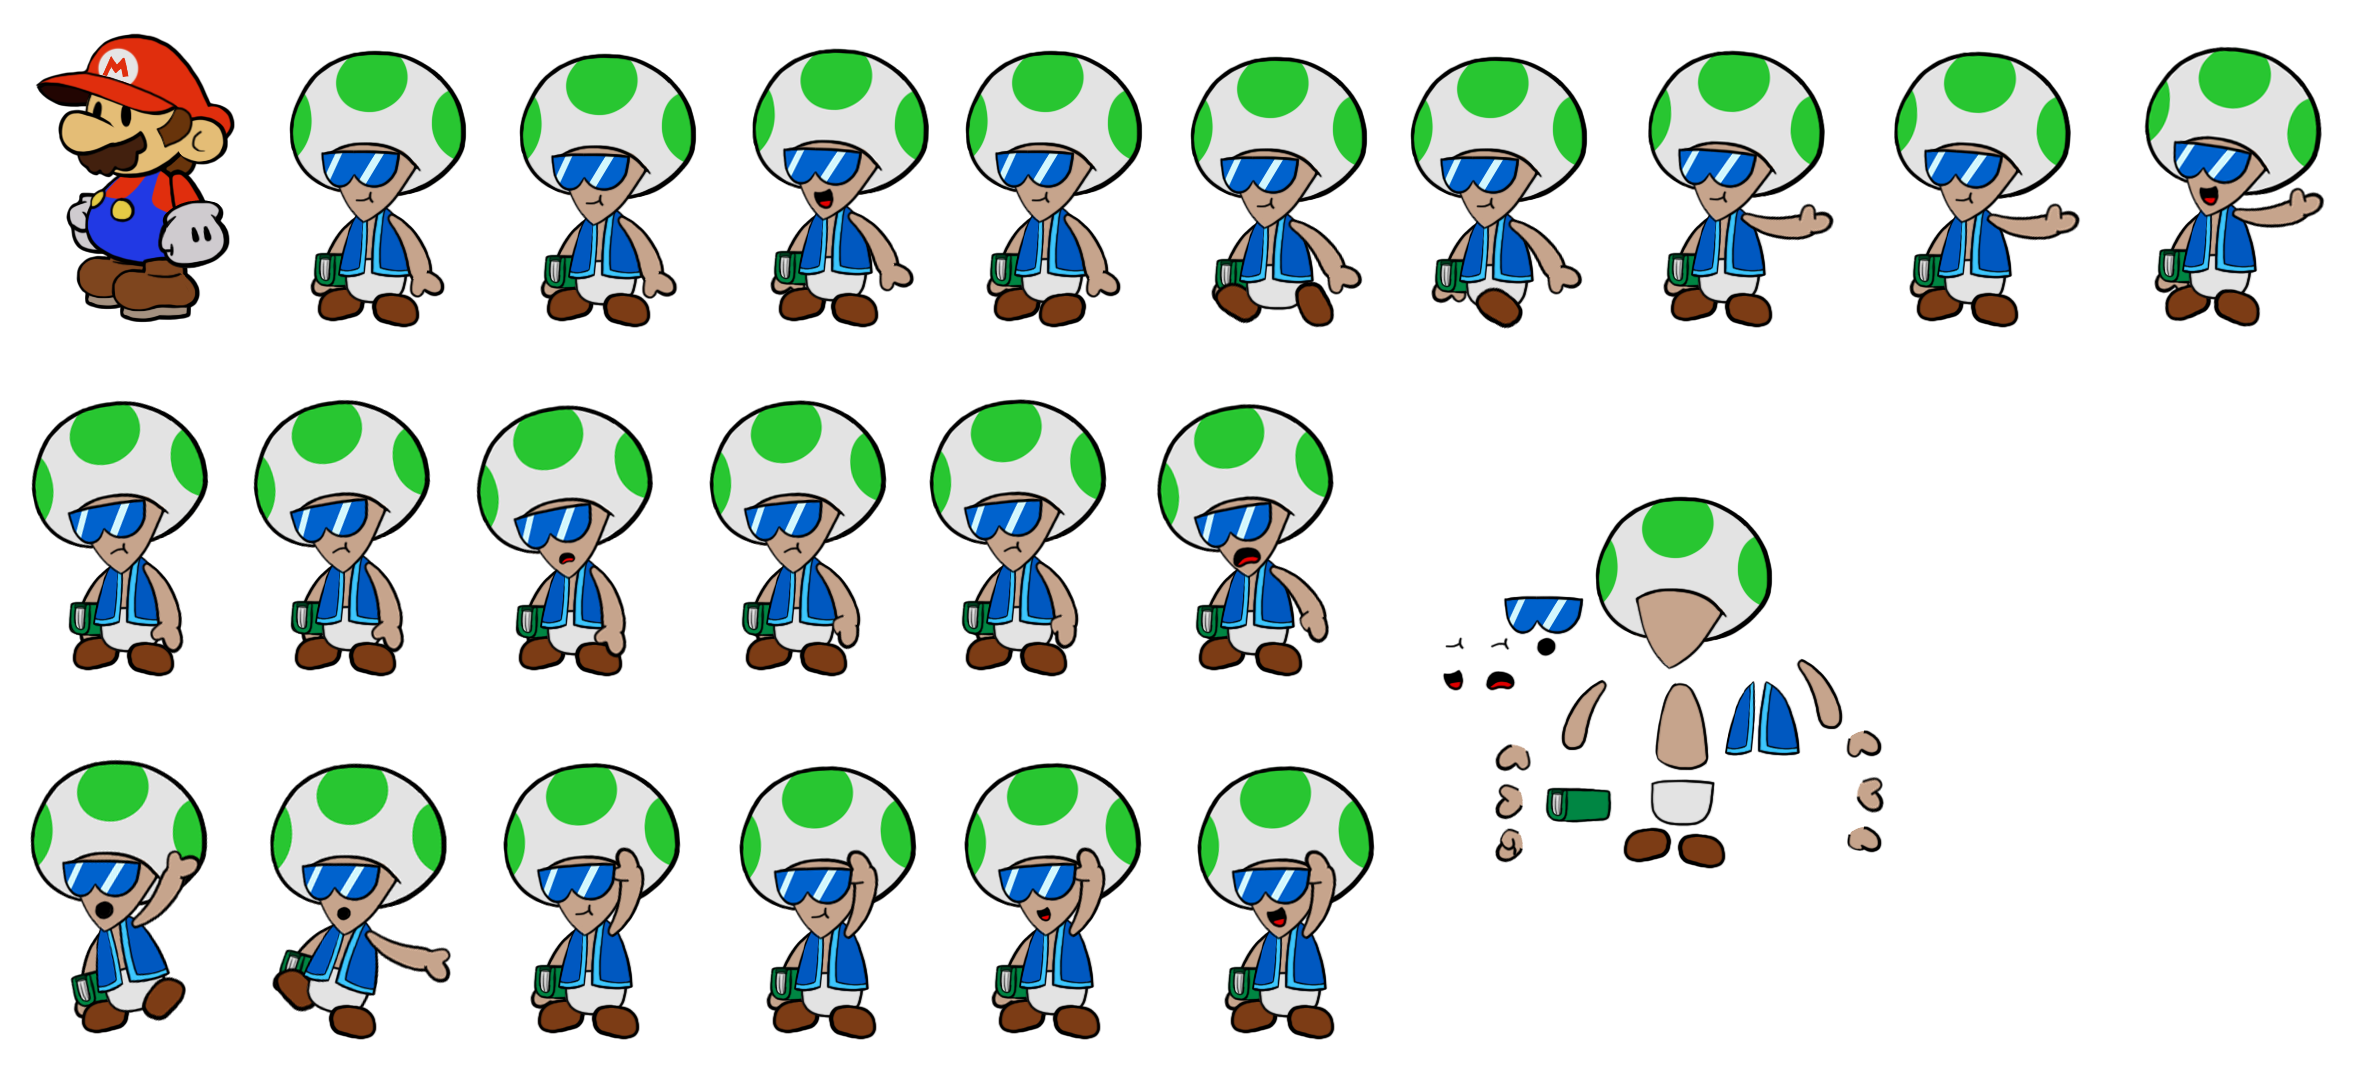 Mushbert (Paper Mario-Style)